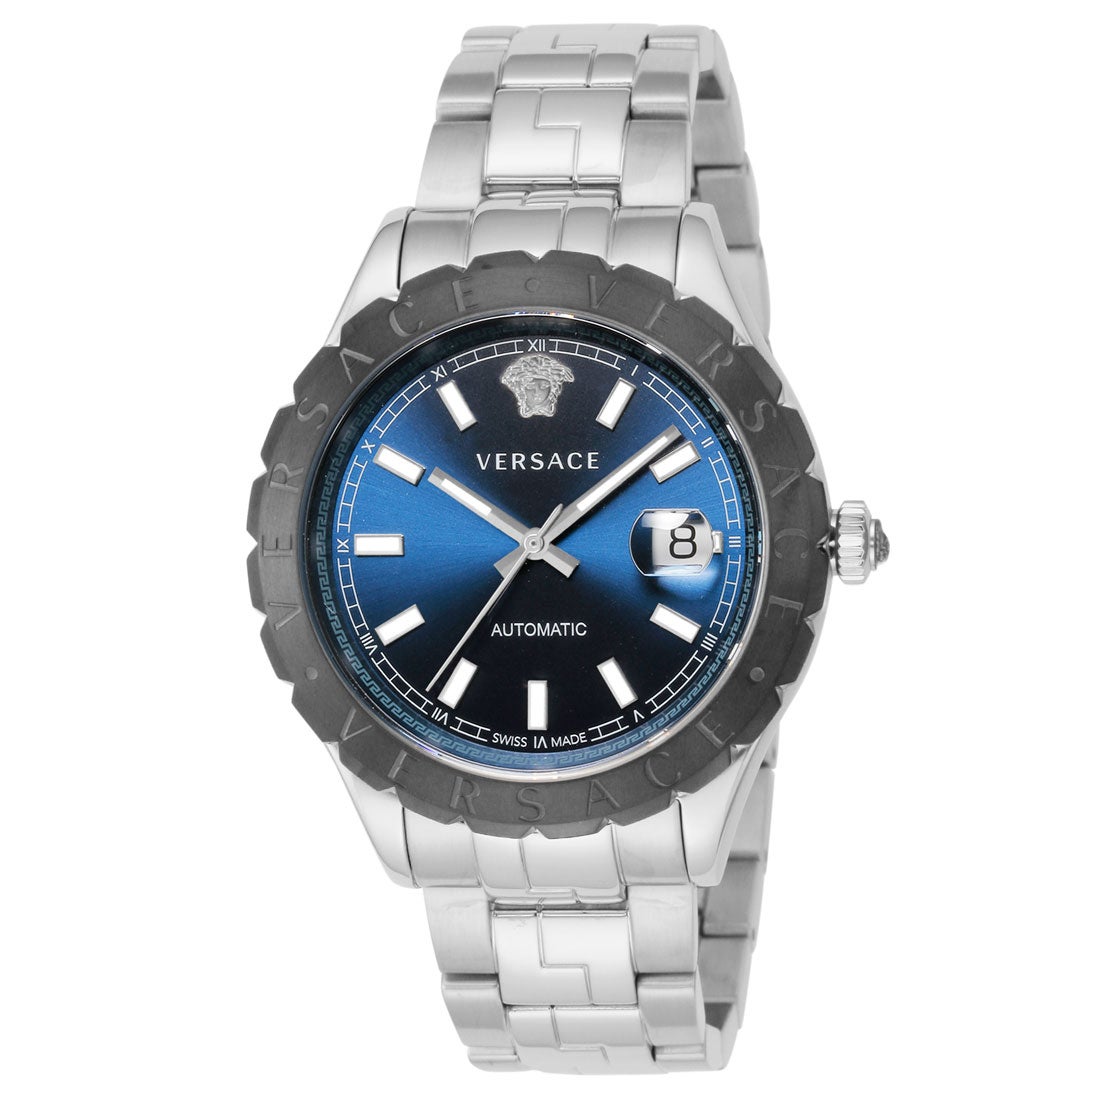 ヴェルサーチェ VERSACE 腕時計 メンズ VEZI00219メンズ - 腕時計